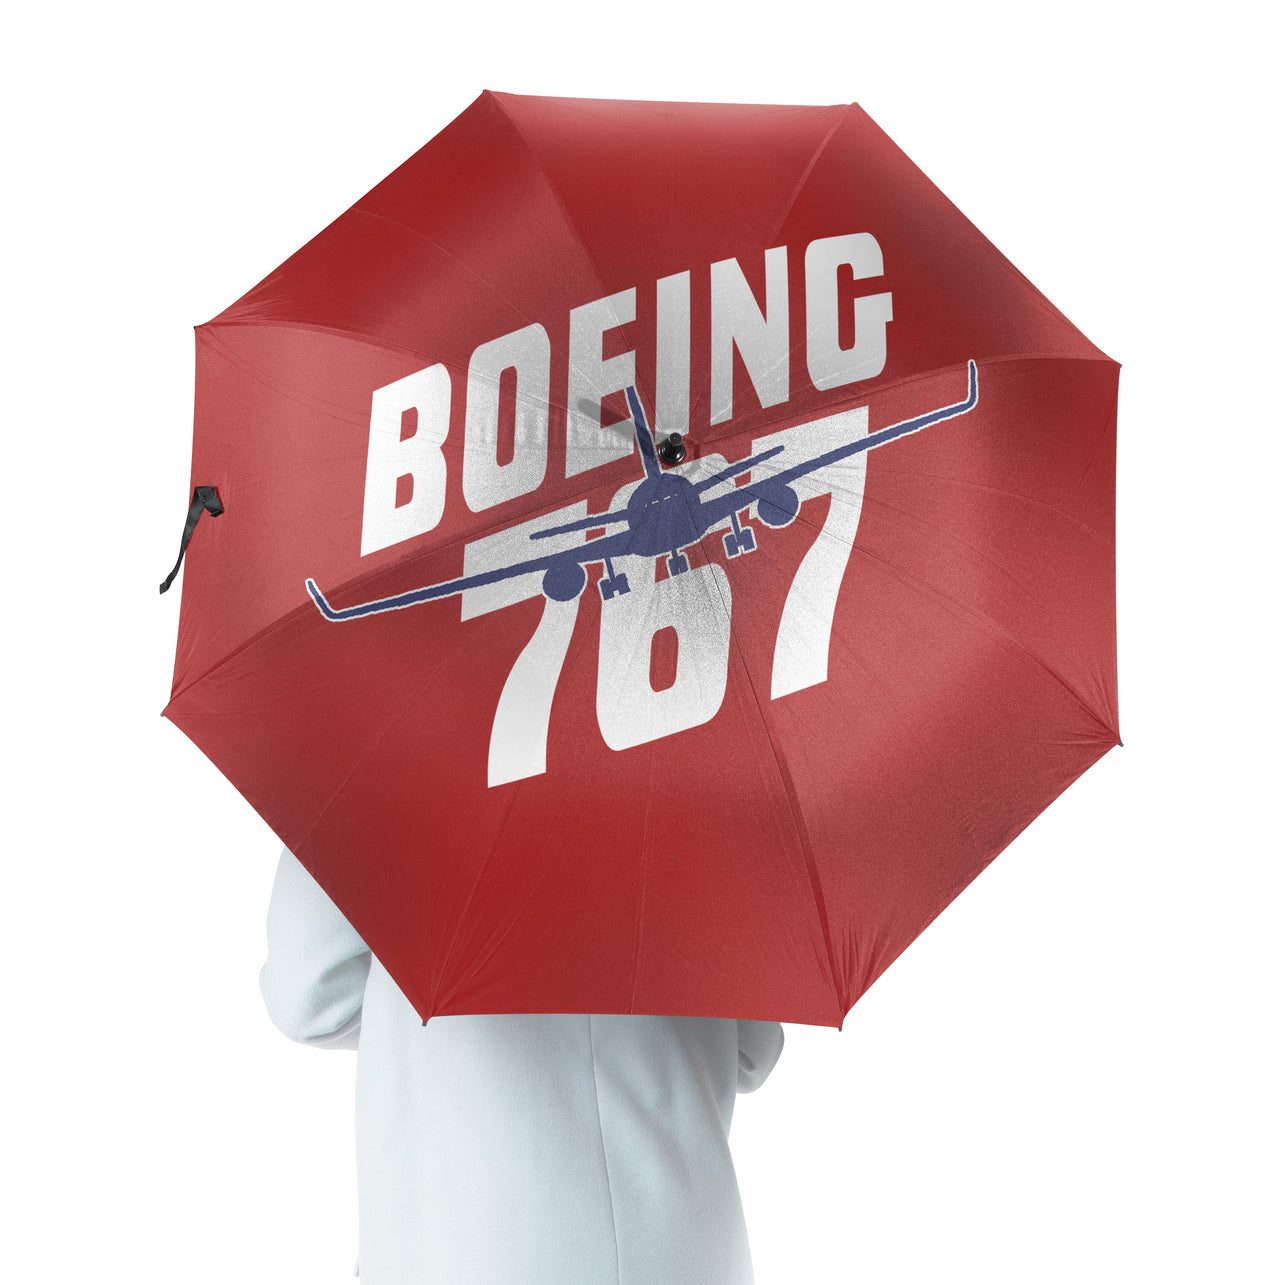 Amazing Boeing 767 Designed Umbrella